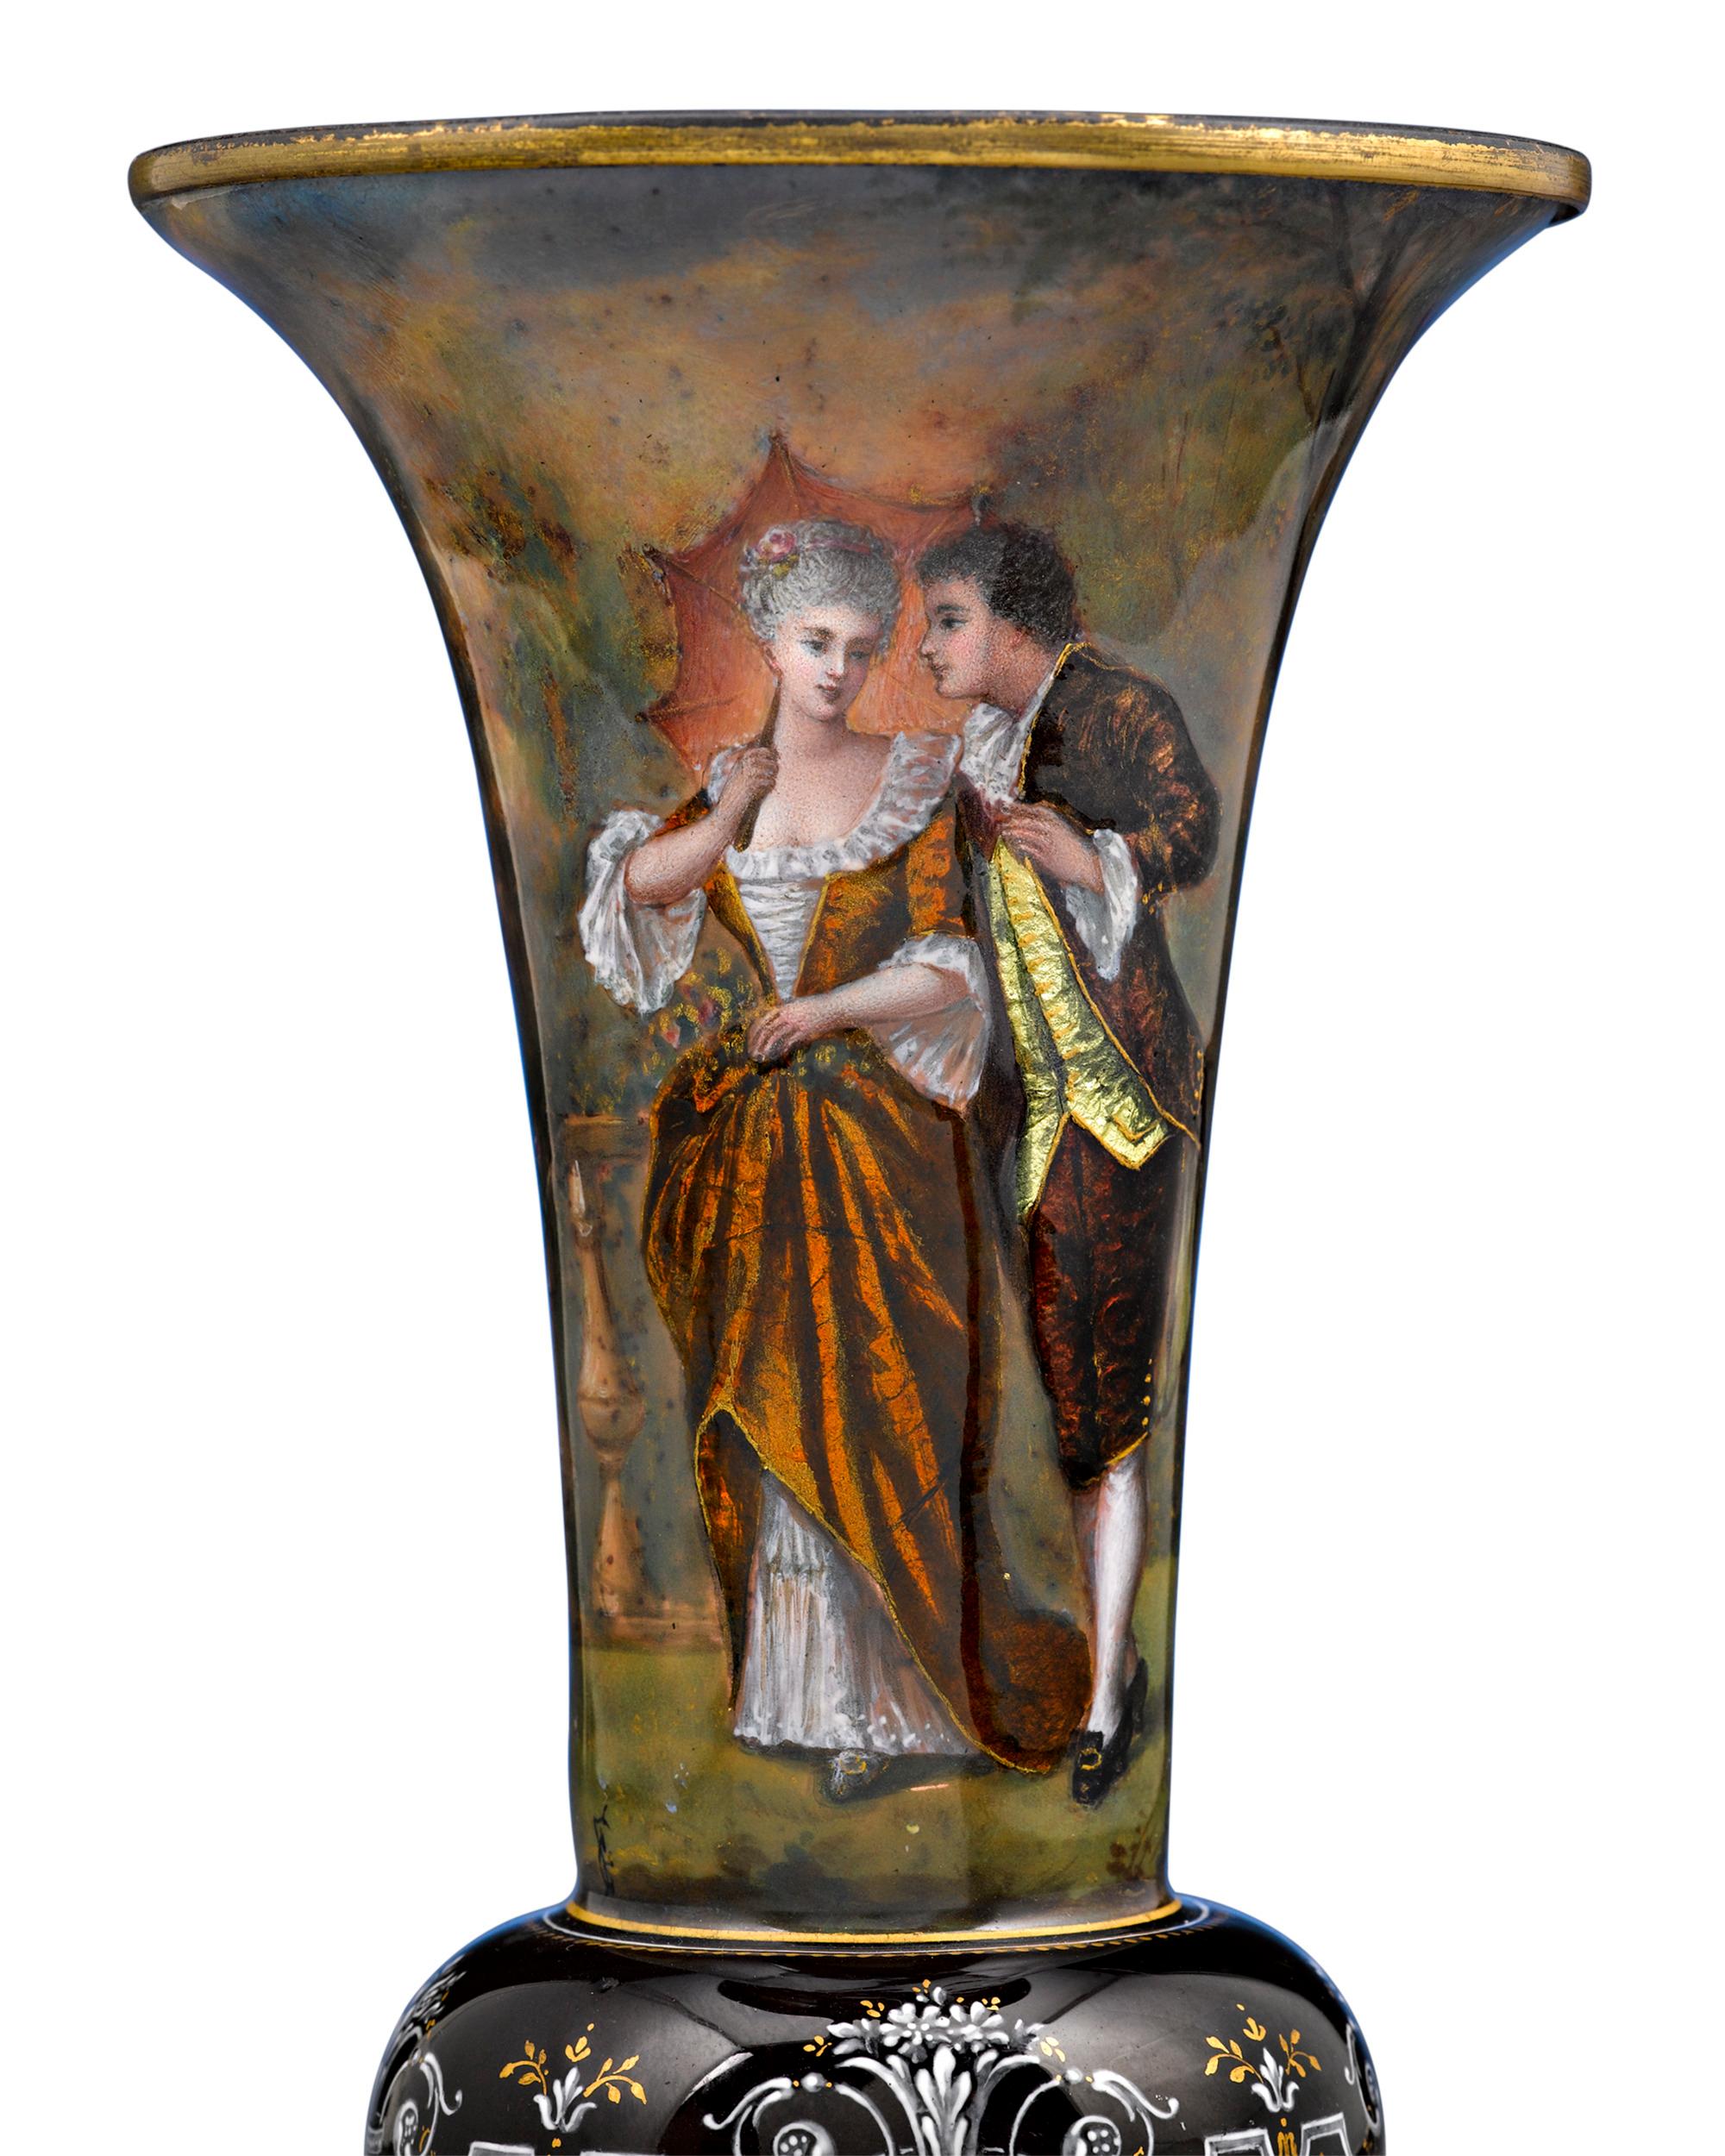 Ein wunderschönes Paar Limoges-Emailvasen mit romantischen Szenen von Verliebten aus dem 18. Jahrhundert in farbenfrohen Kleidern. Es ist besonders selten, Paare dieser wunderbaren Vasen in einem so tadellosen Zustand zu finden,

um